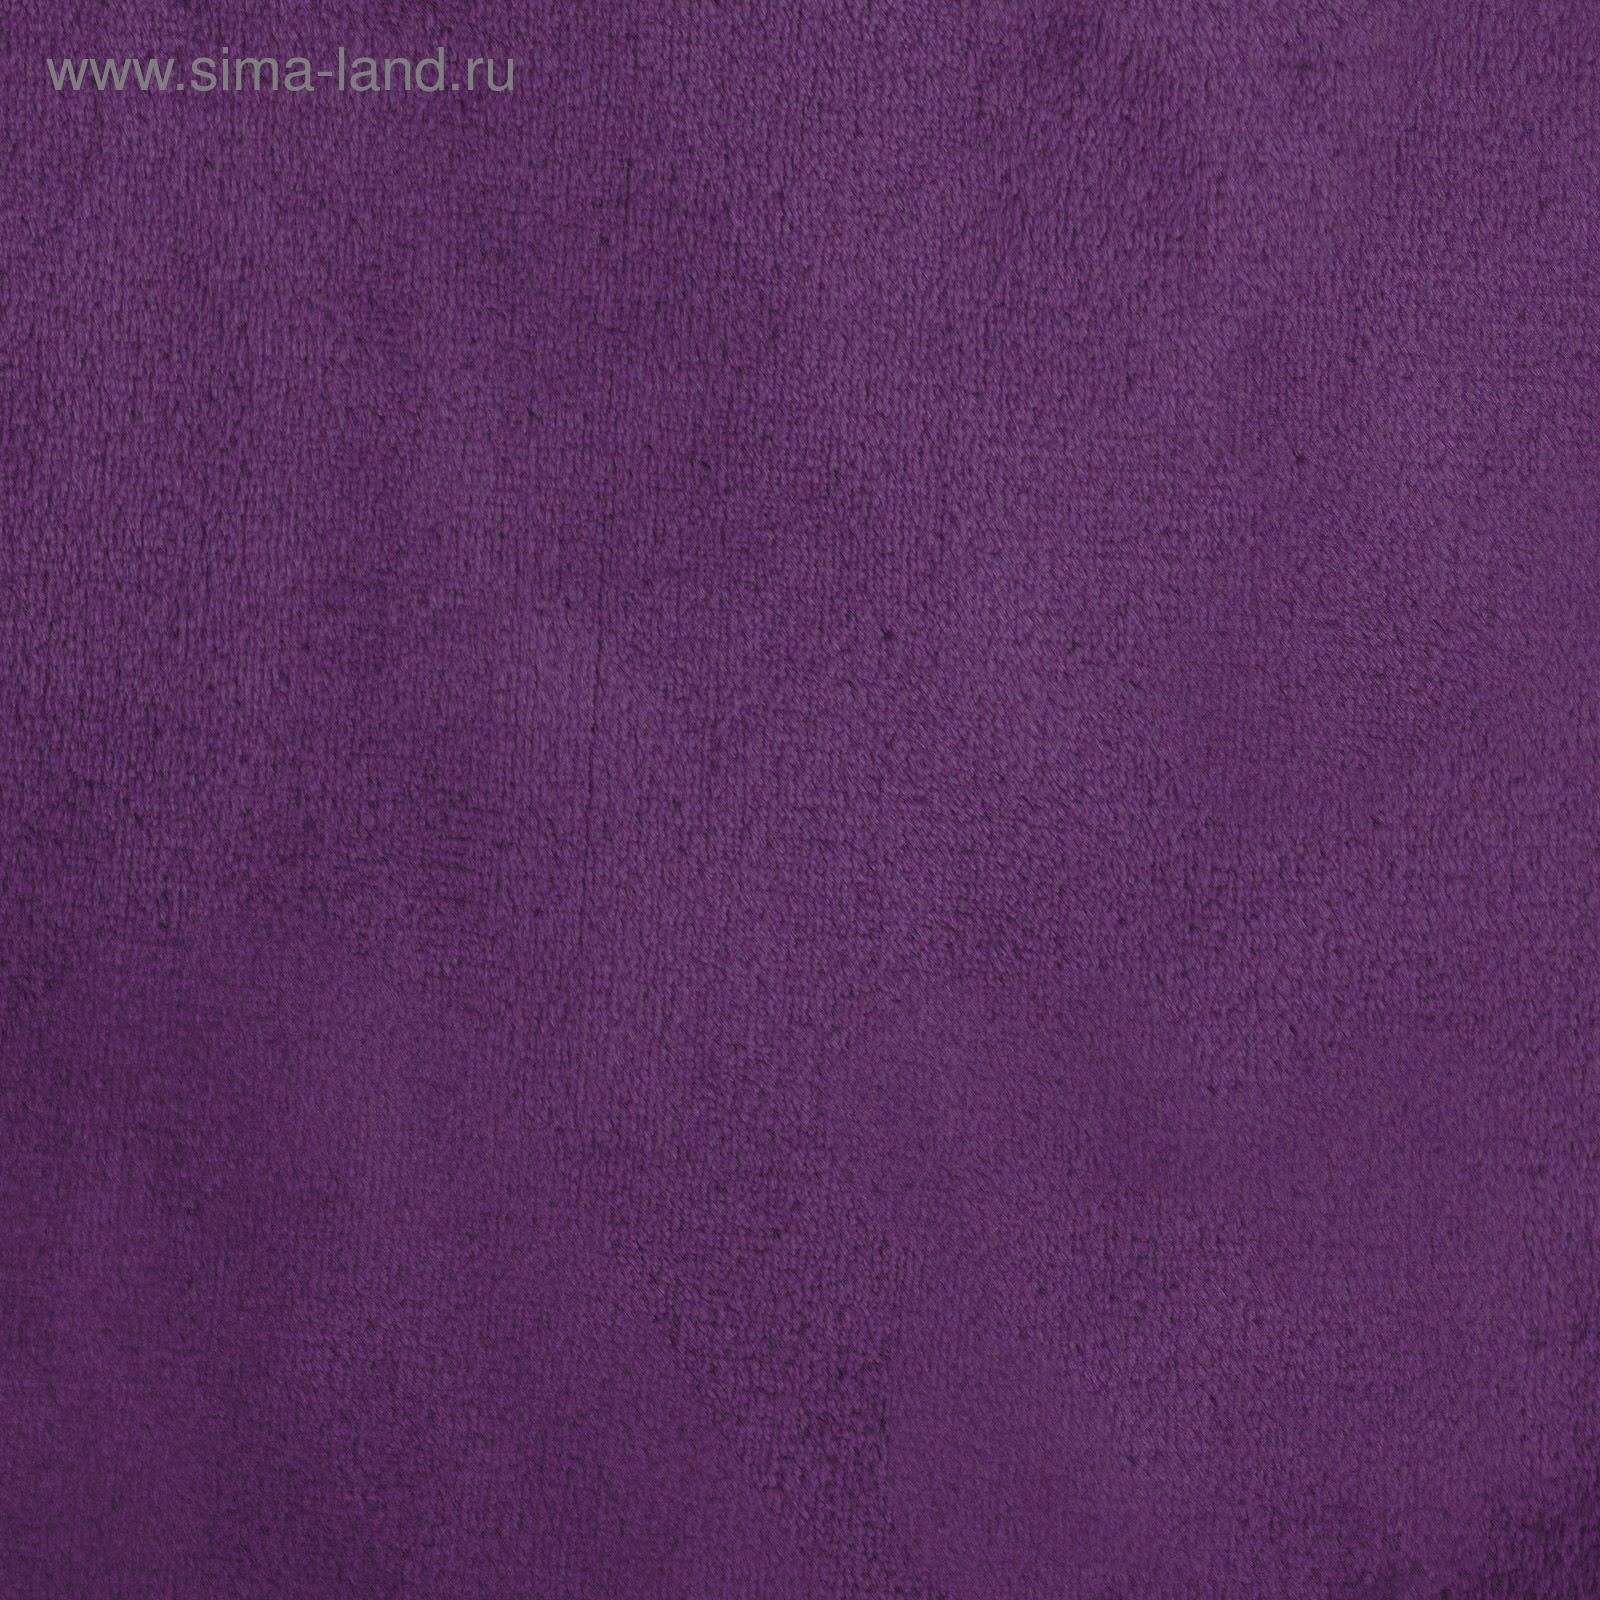 Аметист мебельные ткани Coral. D-Art Corali фиолетовые 0.53 м 9728-2.